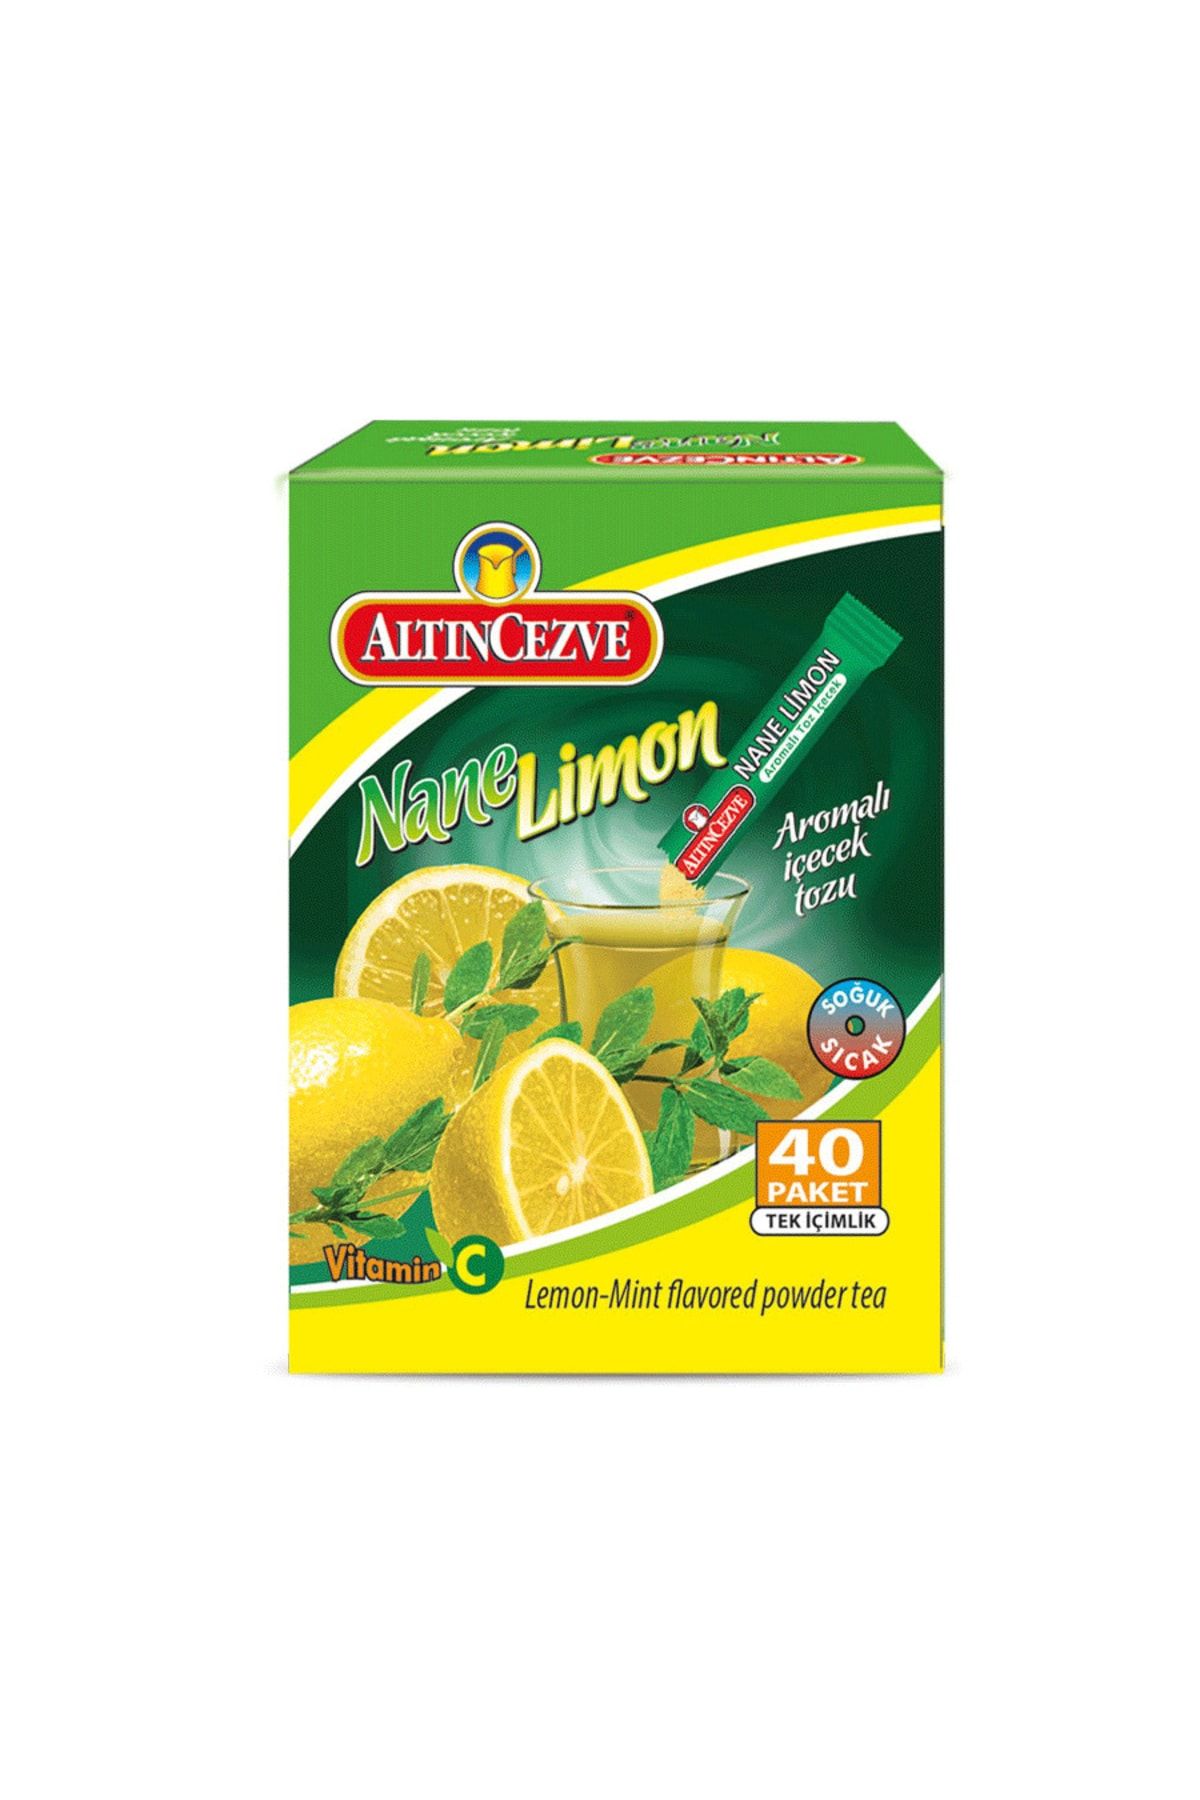 Altıncezve Nane Limon Aromalı Tek Içimlik Içecek Tozu 40 Adet X 1,5 gr